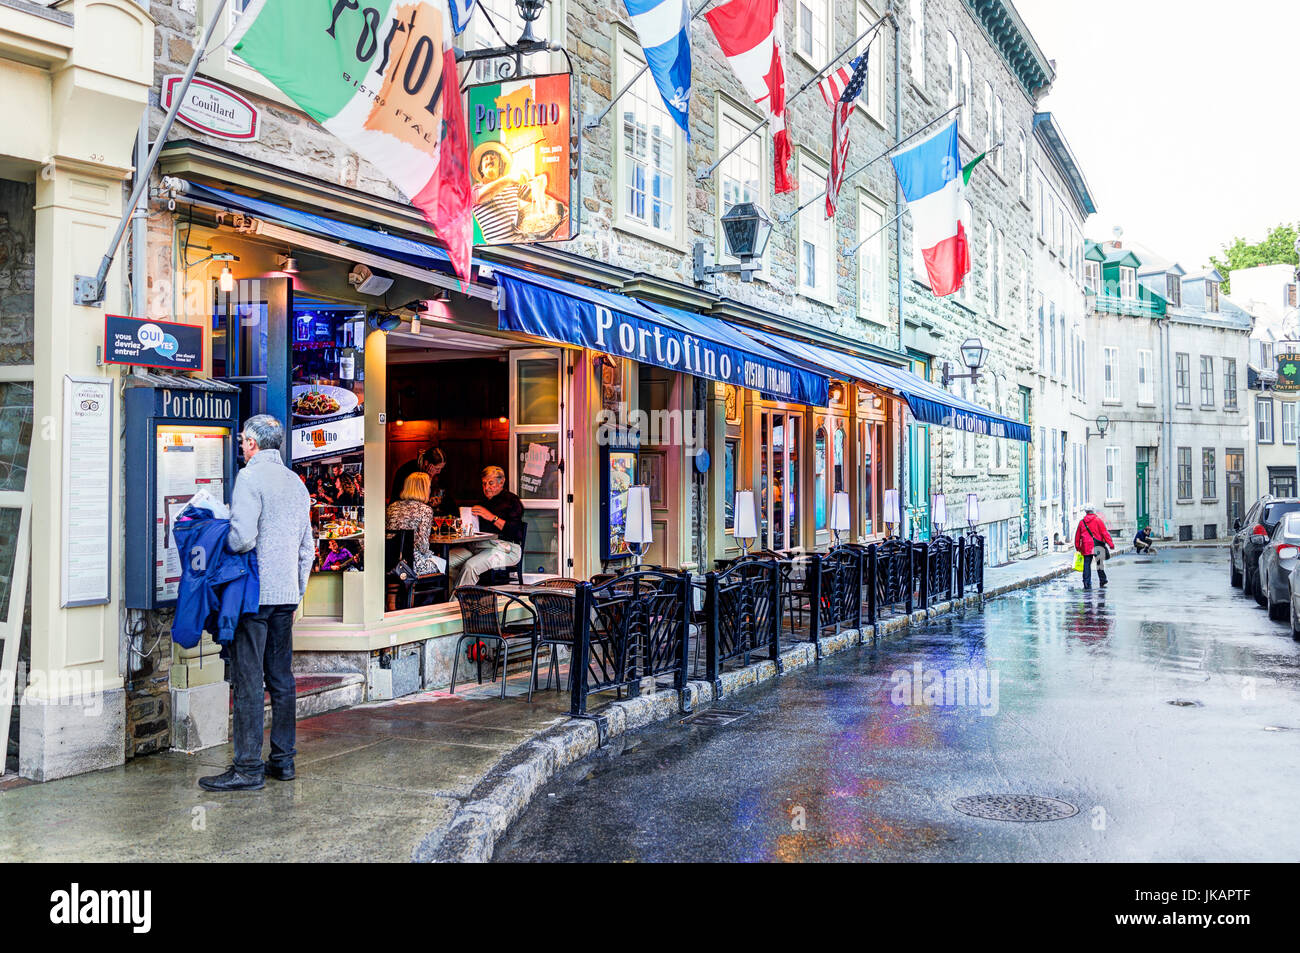 La ville de Québec, Canada - 31 mai 2017 : rue de la vieille ville rue Couillard avec man reading menu du restaurant Portofino Banque D'Images